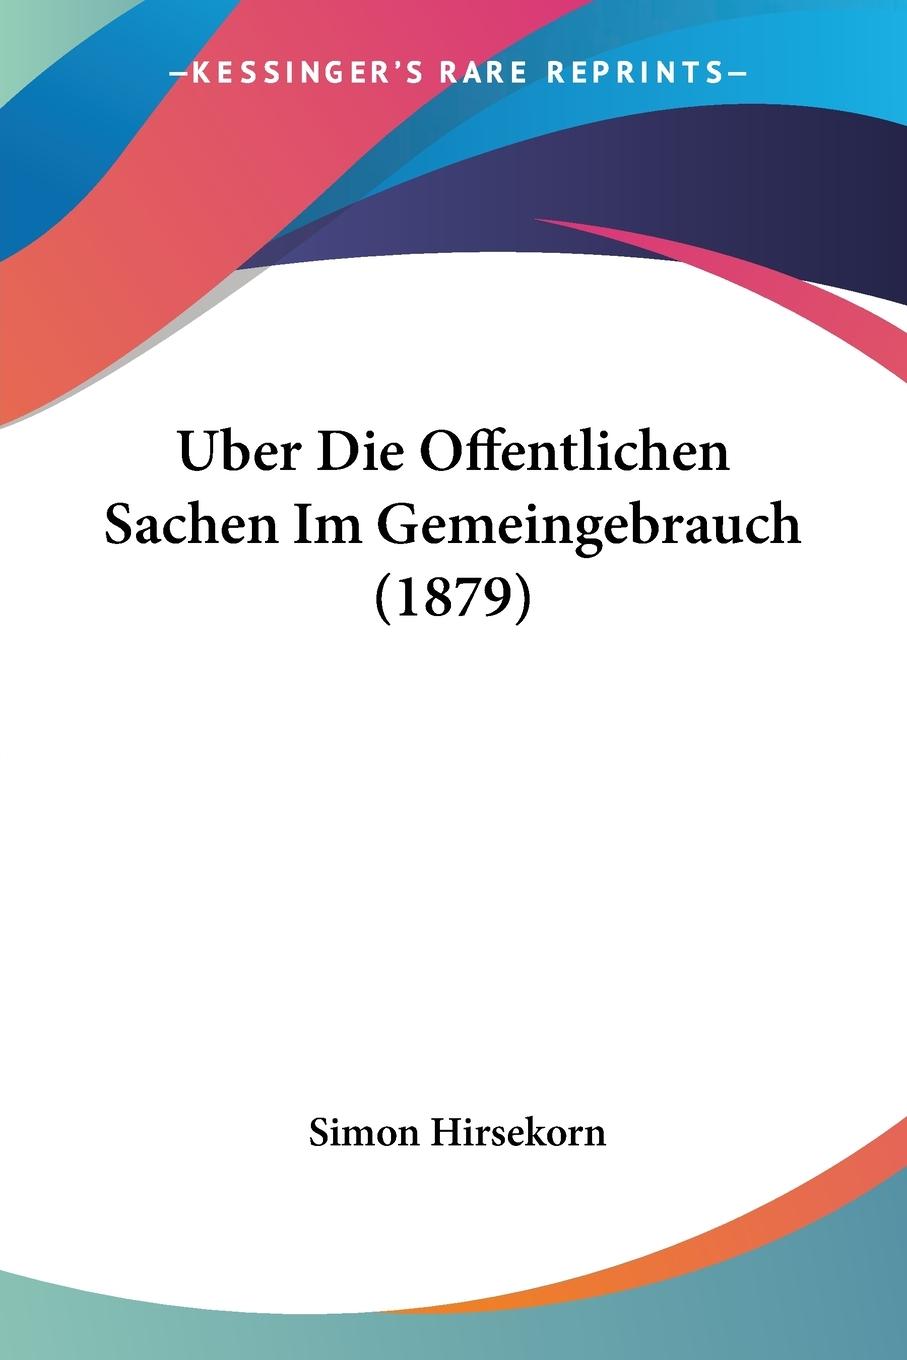 Uber Die Offentlichen Sachen Im Gemeingebrauch (1879) - Hirsekorn, Simon